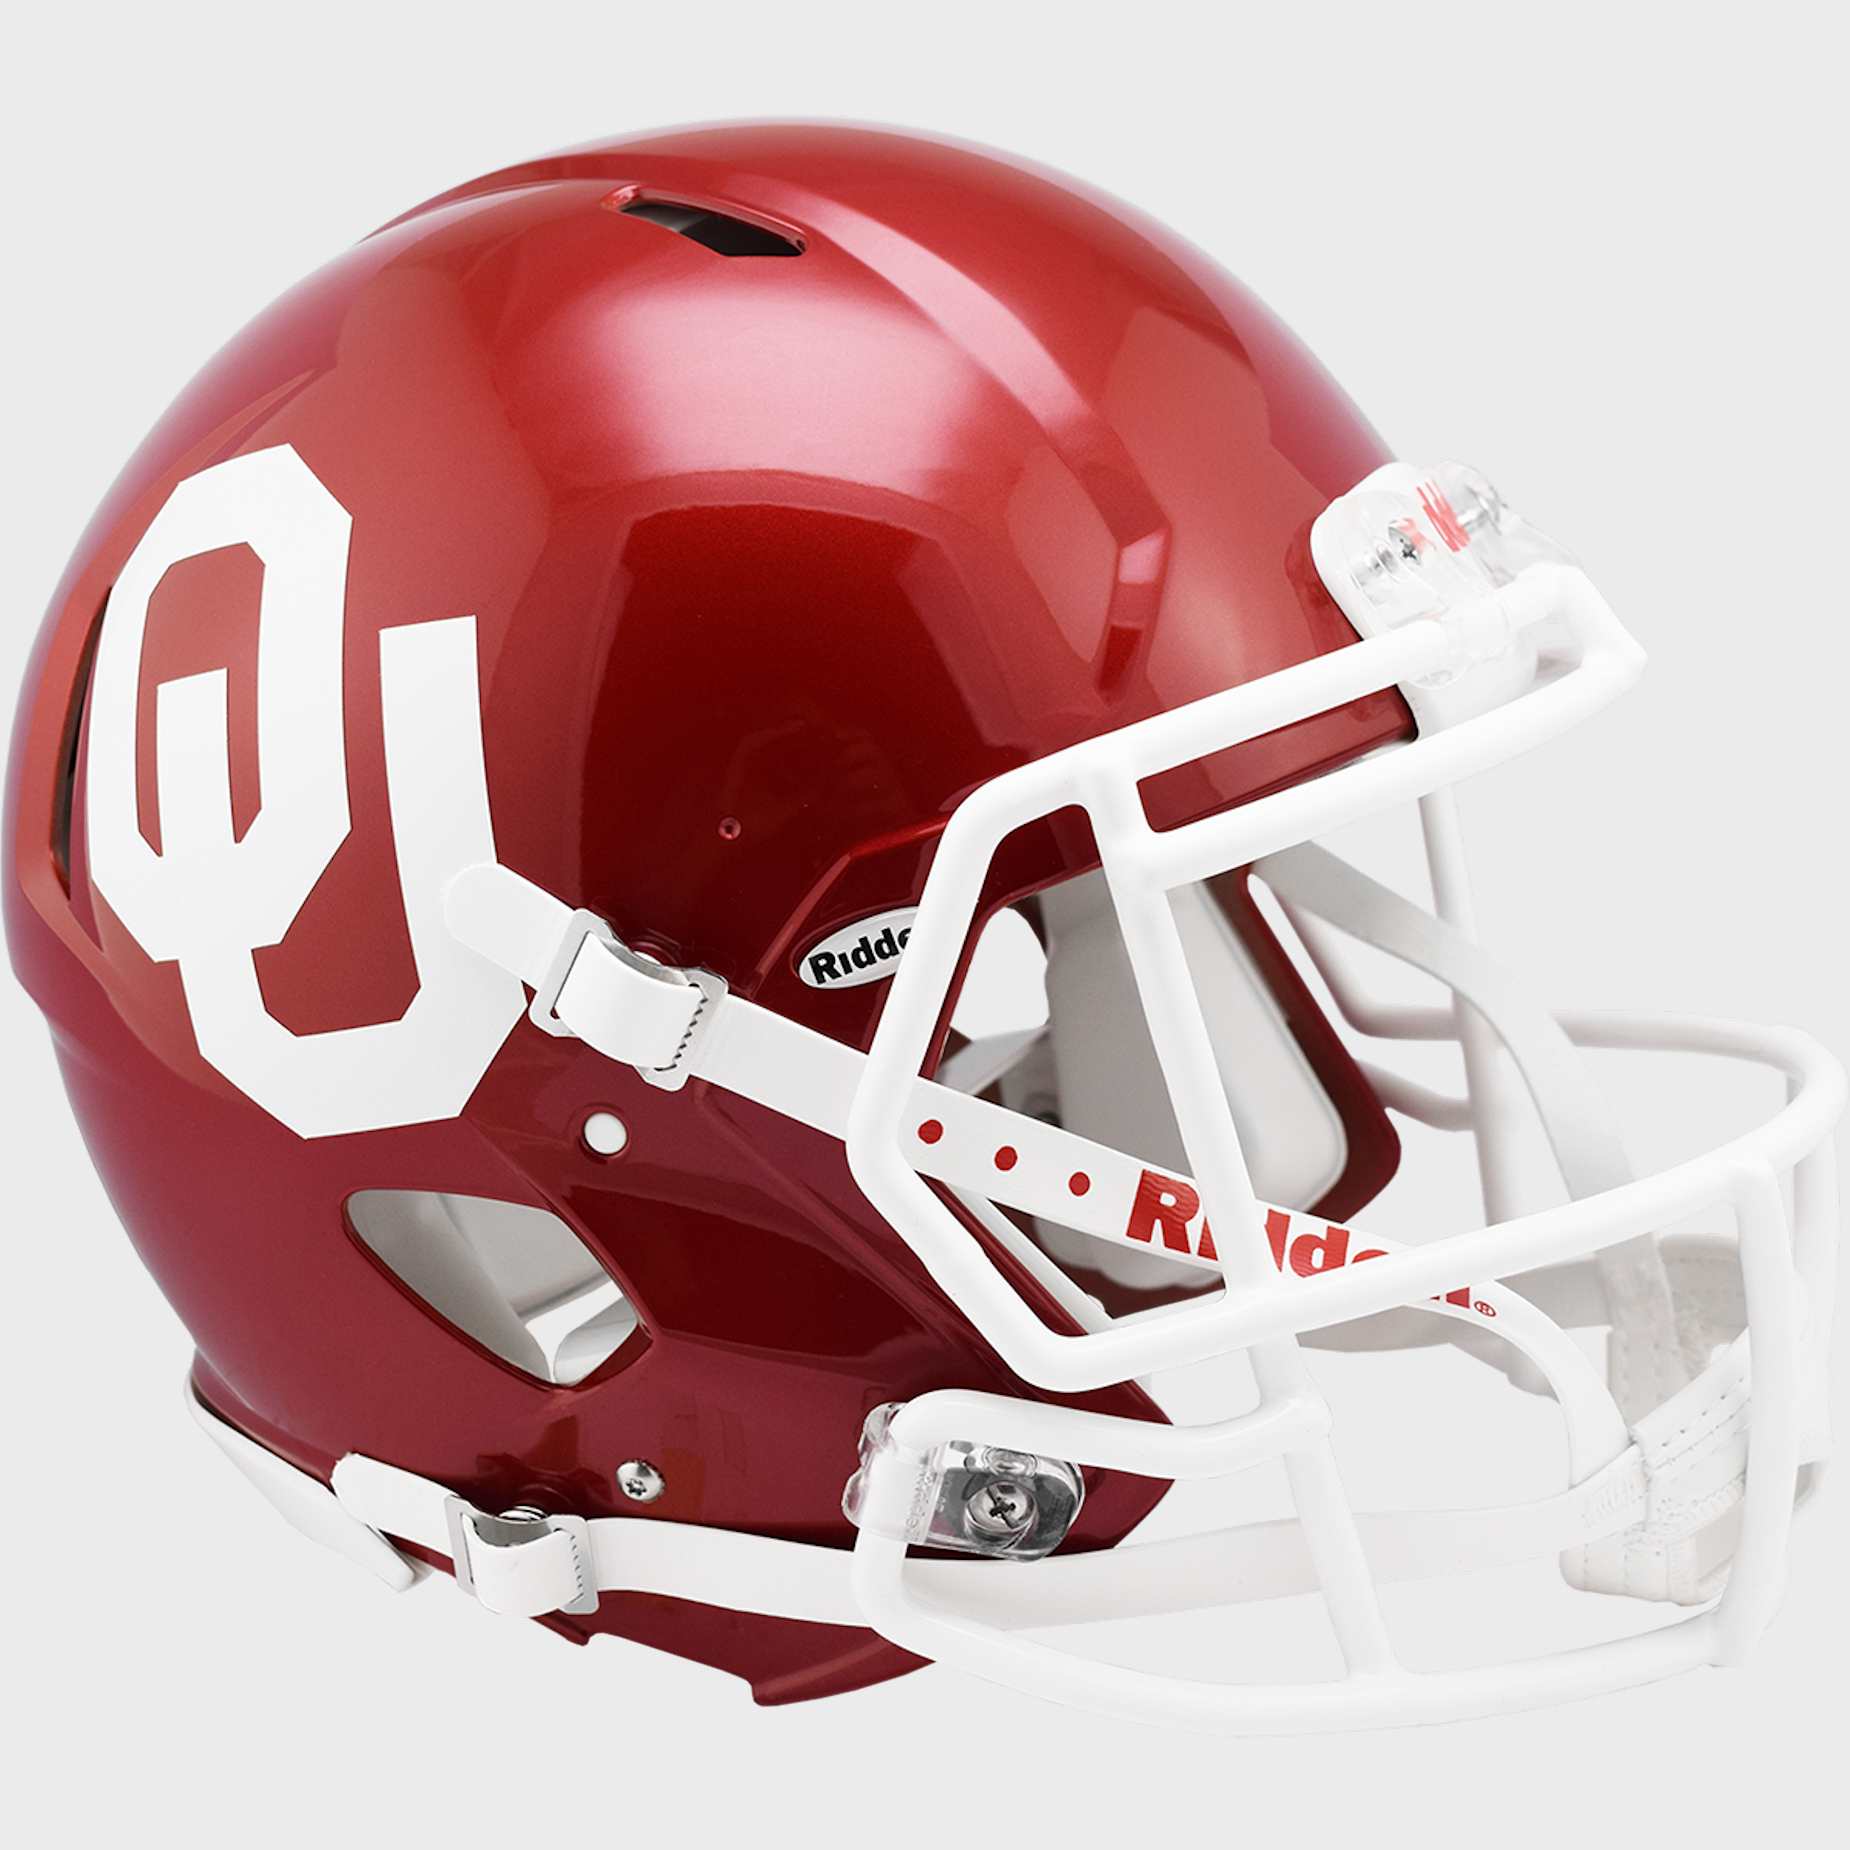 Oklahoma Sooners authentic full size helmet